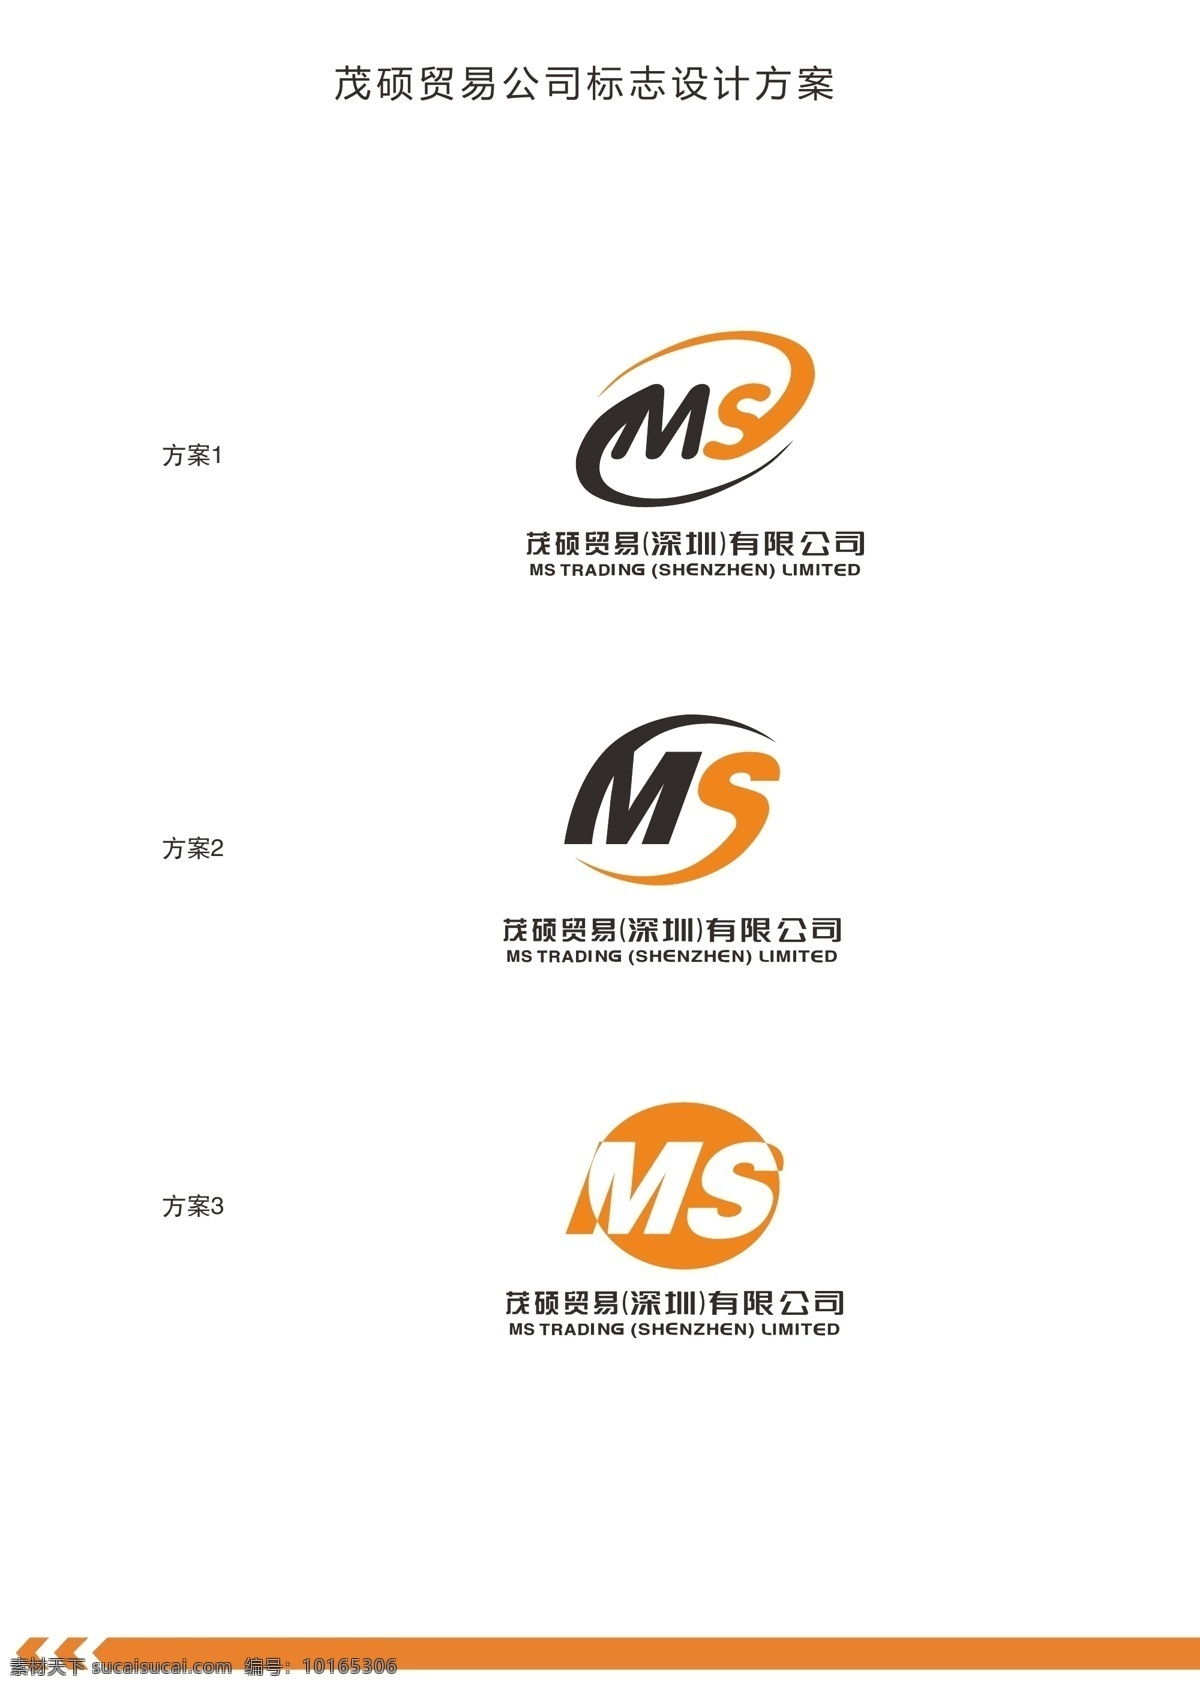 ms 标识 标志 logo 企业标志设计 企业 标识标志图标 矢量